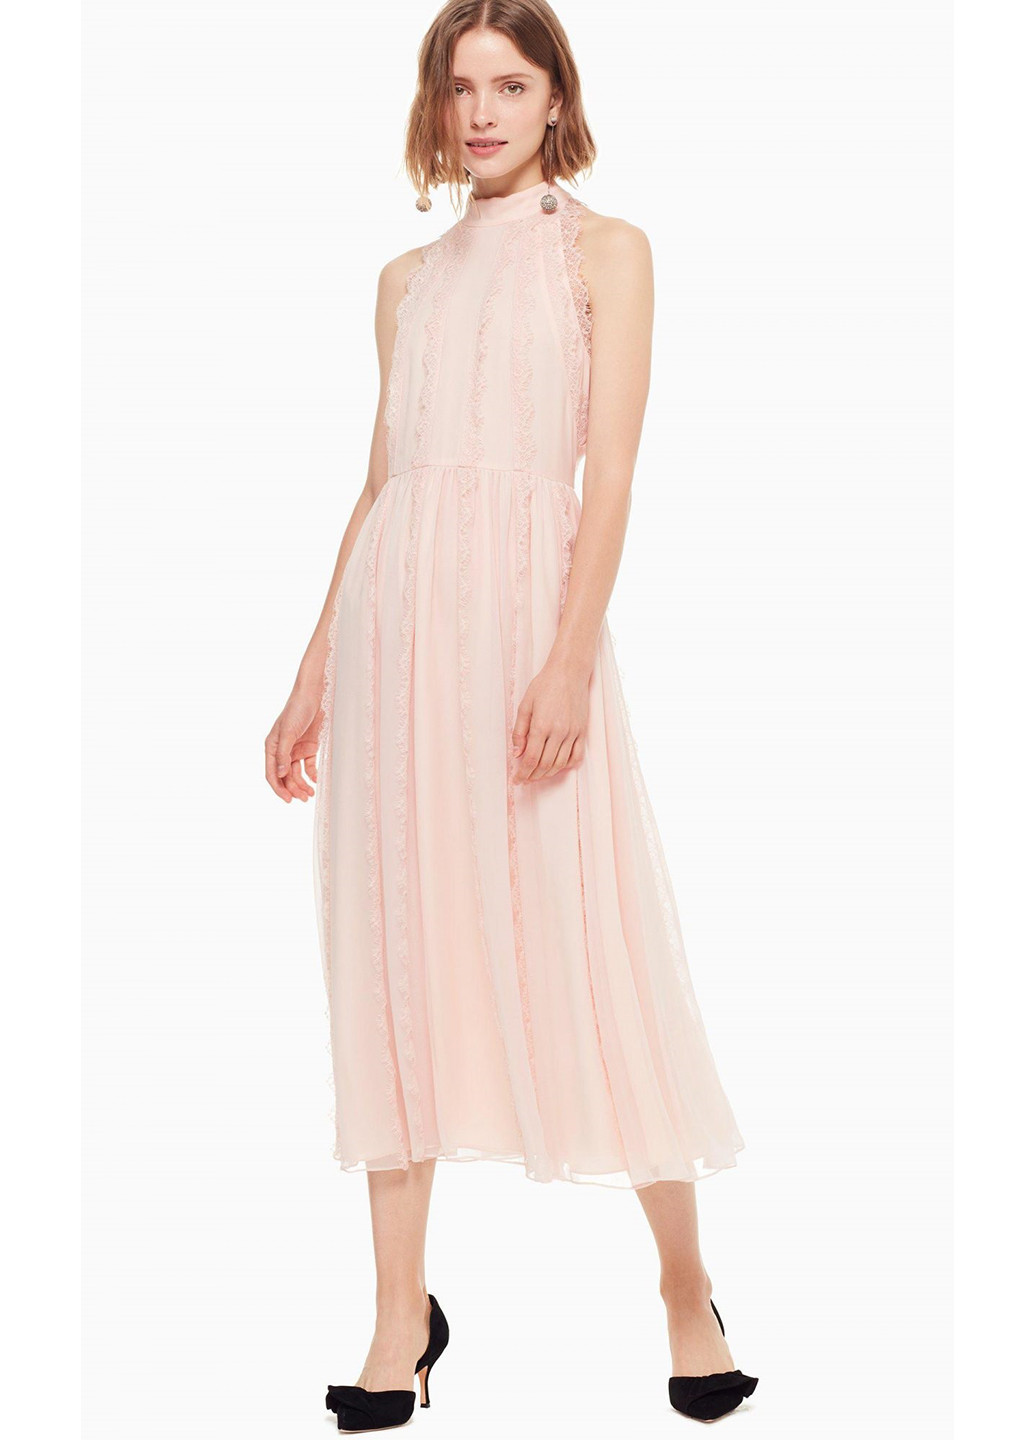 Светло-розовое коктейльное платье клеш Kate Spade однотонное